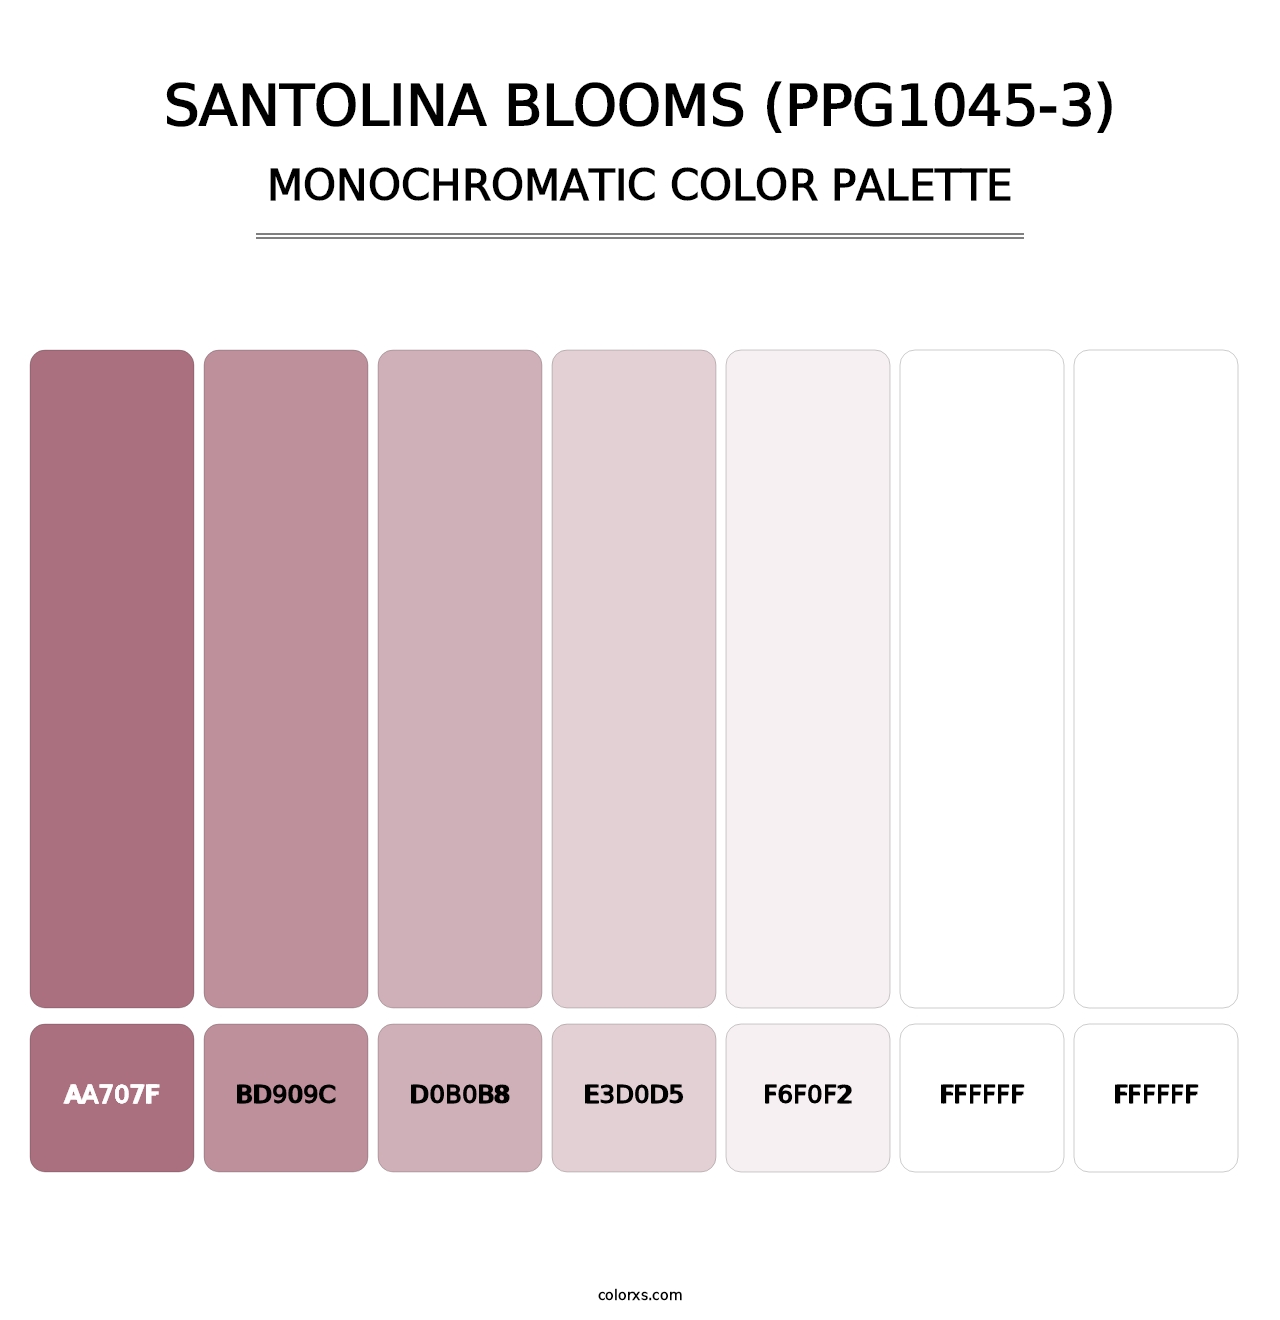 Santolina Blooms (PPG1045-3) - Monochromatic Color Palette